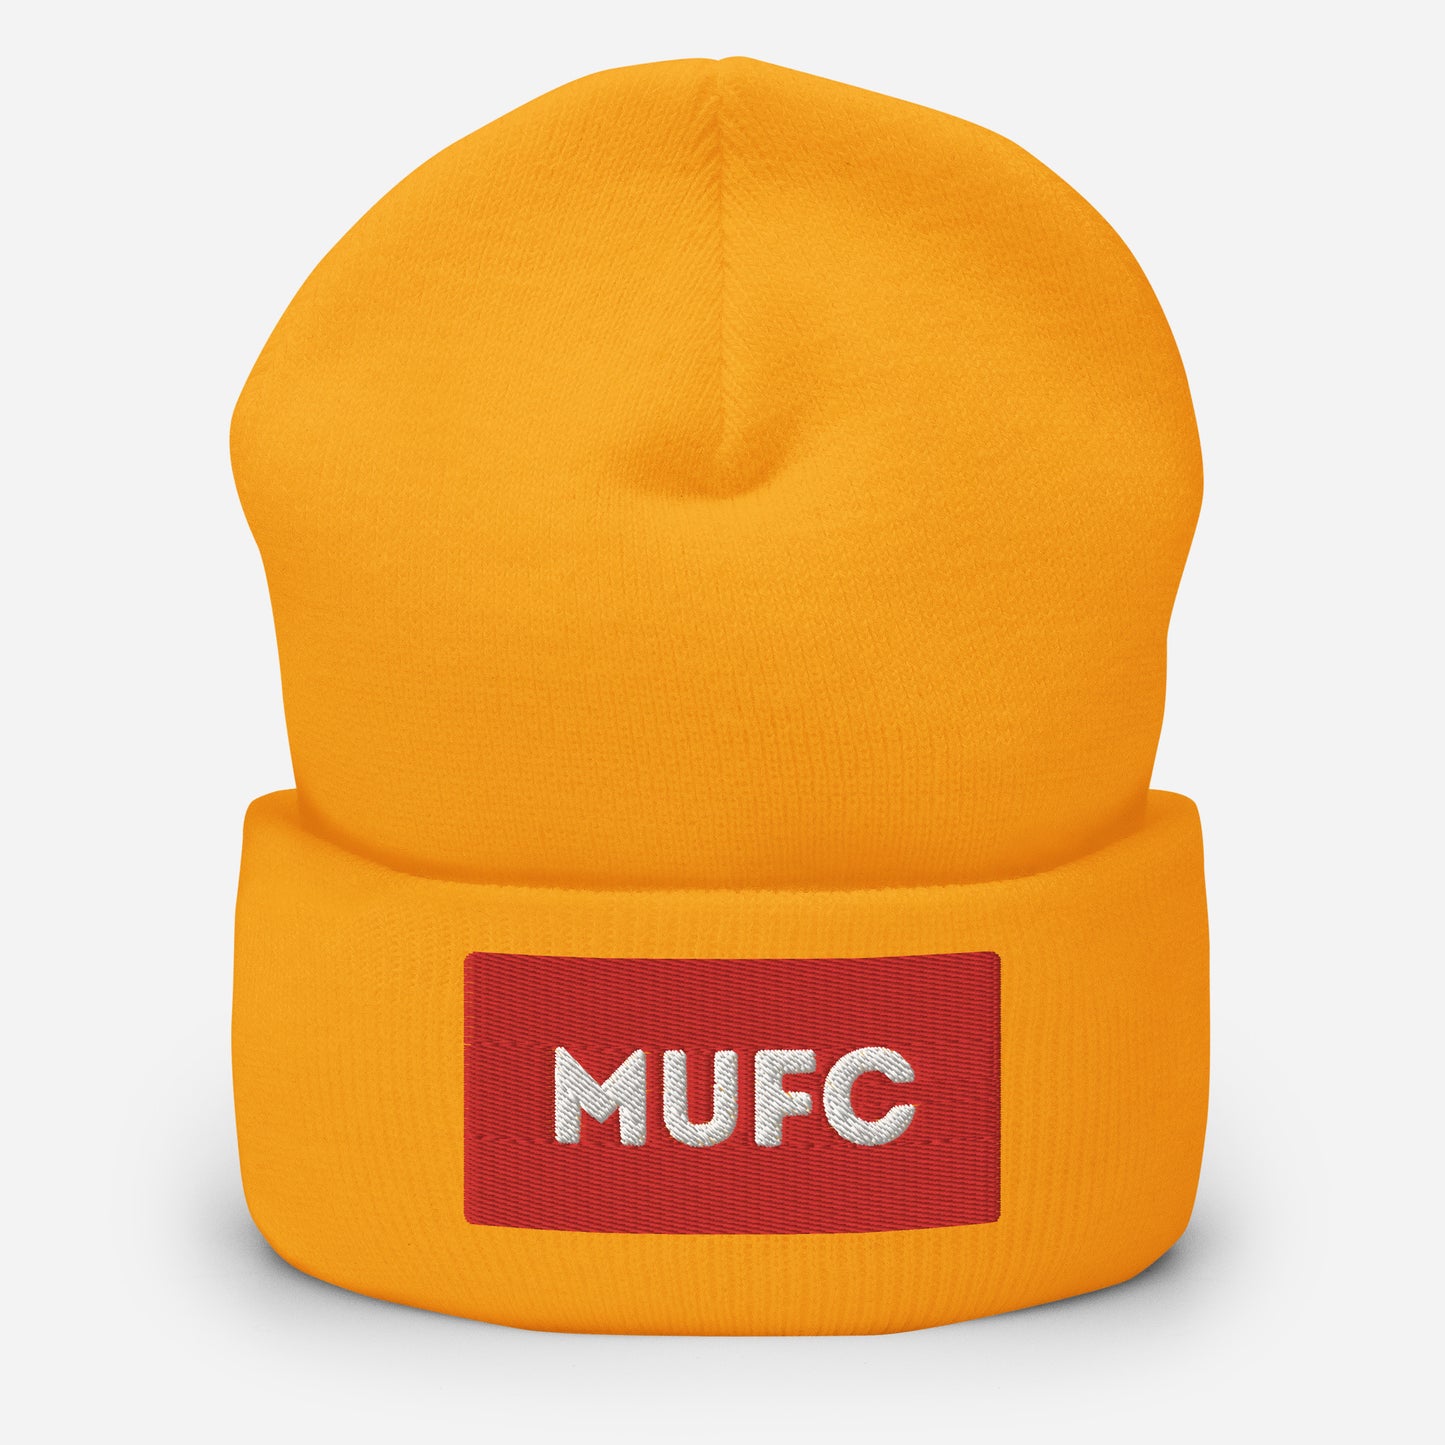 MUFC Cuffed Beanie Hat